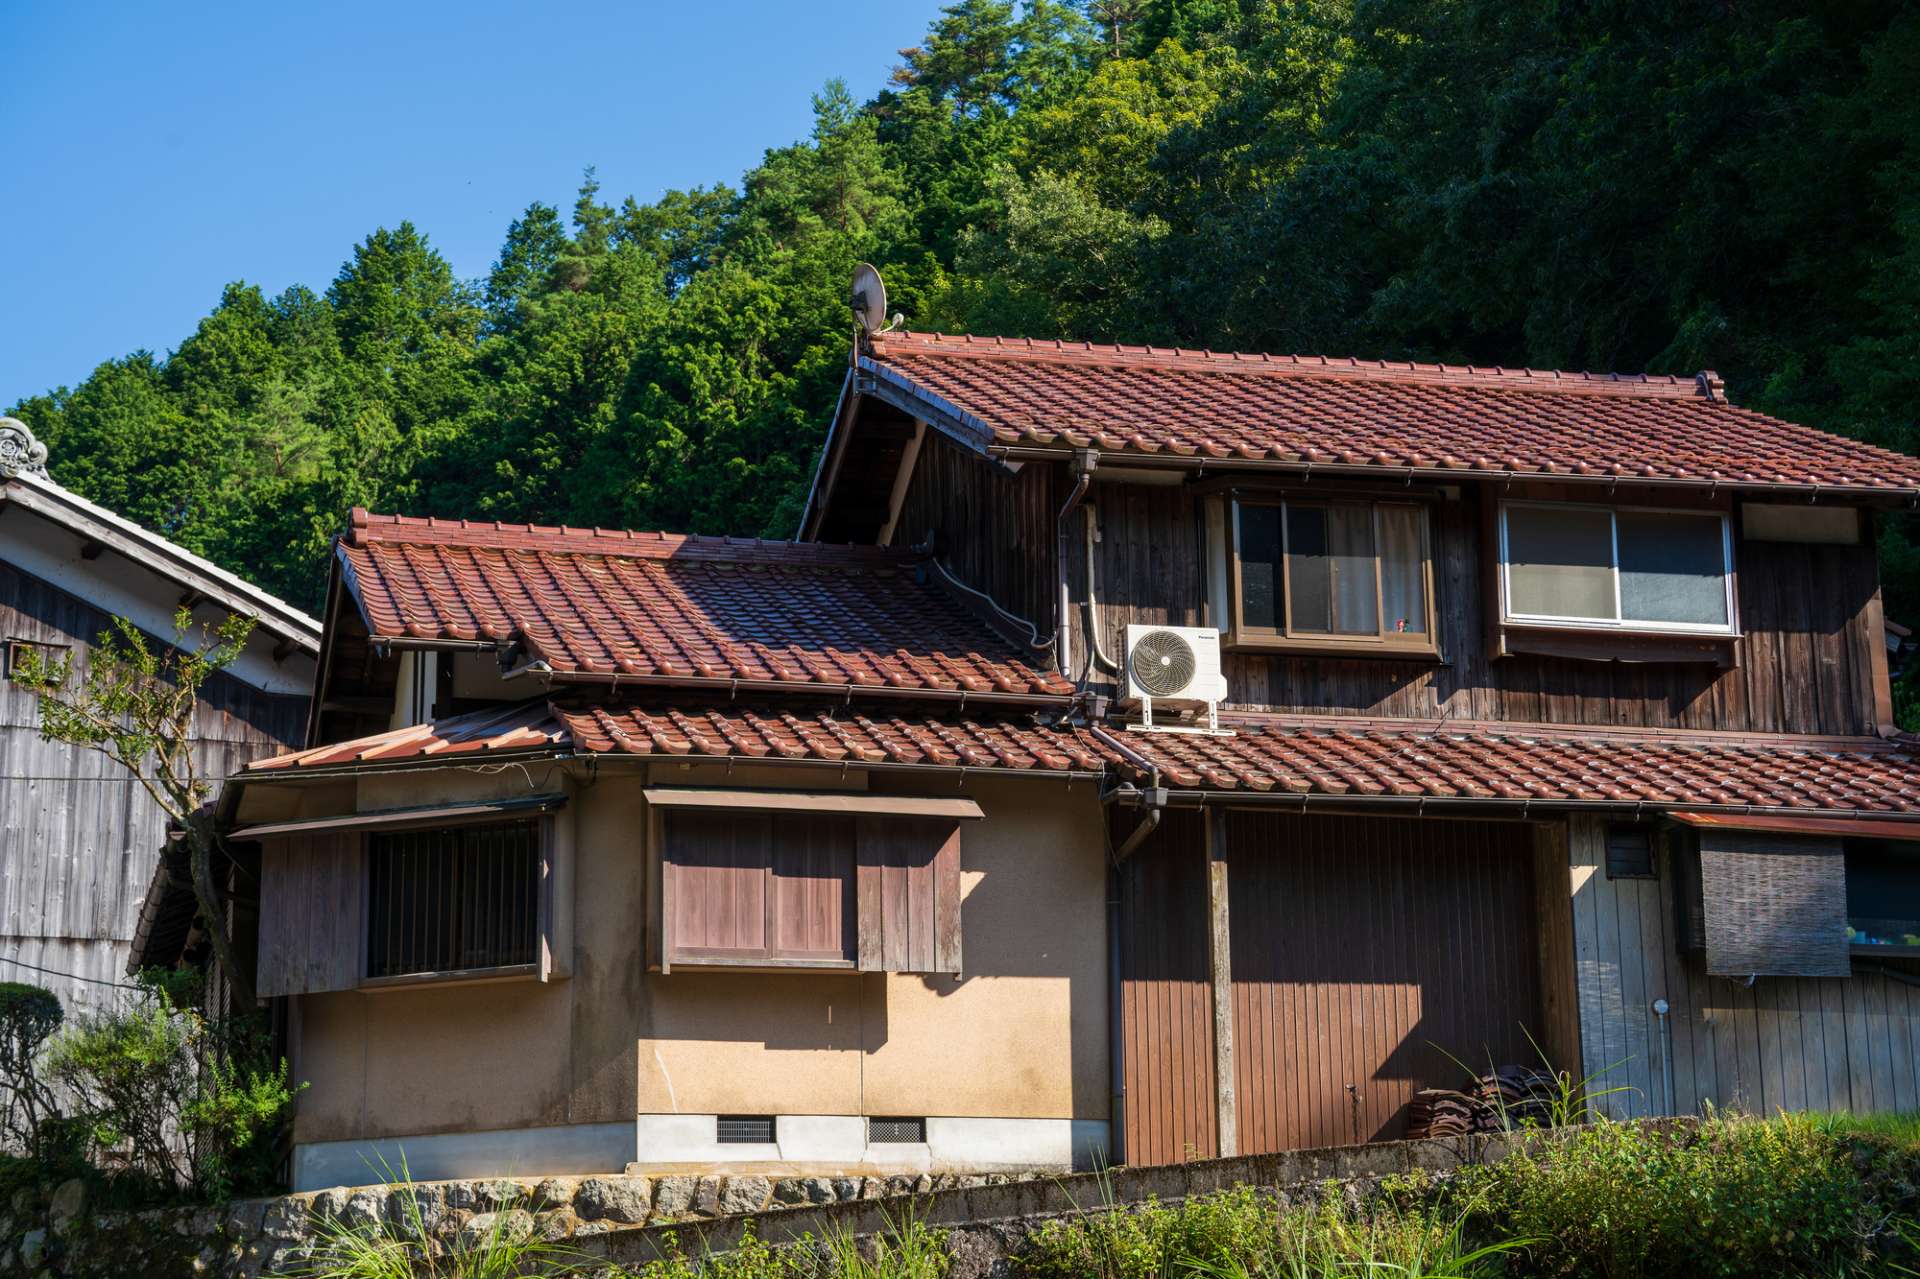 空き家売却・対策・活用などで再利用に重点を置いた空き家対策を奈良県五條市や和歌山県橋本市など奈良近隣の皆様に紹介